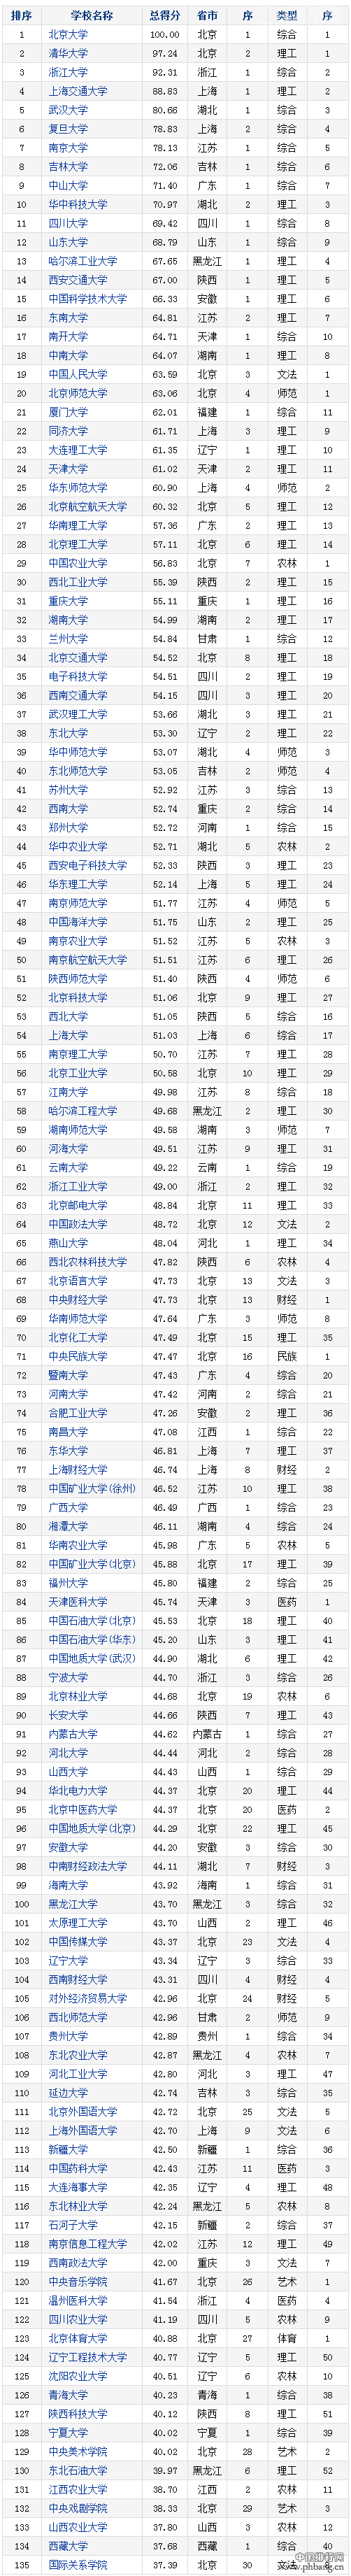 2016-2017年中国重点大学竞争力排行榜（135所）